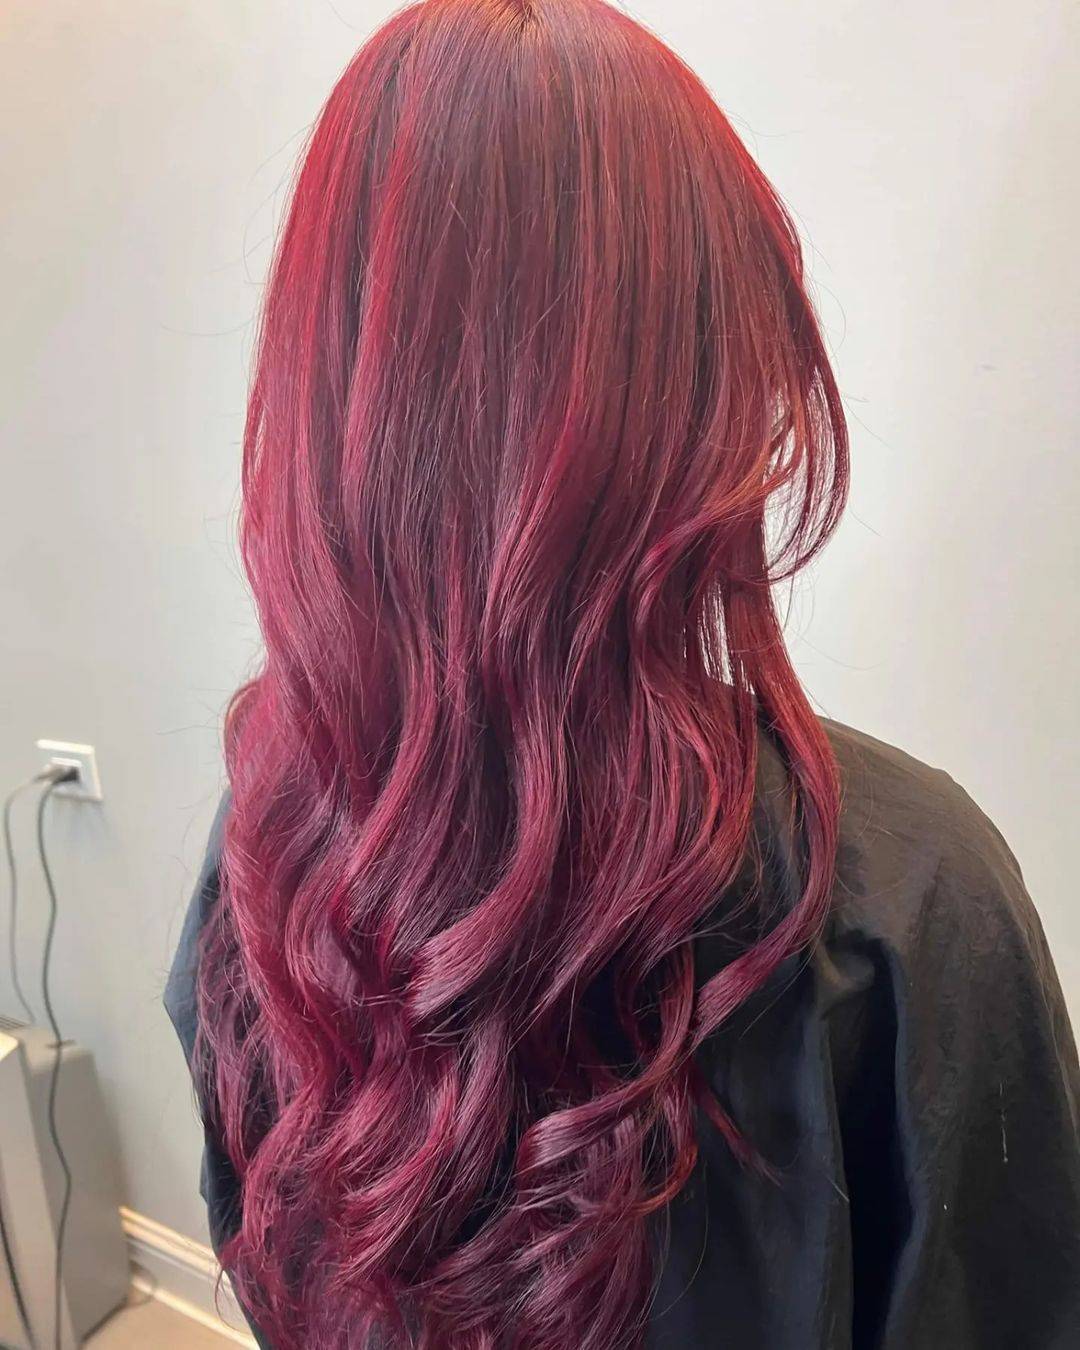 Burgundy hair color 216 burgundy hair color | burgundy hair color for women | burgundy hair color highlights Burgundy Hair Color